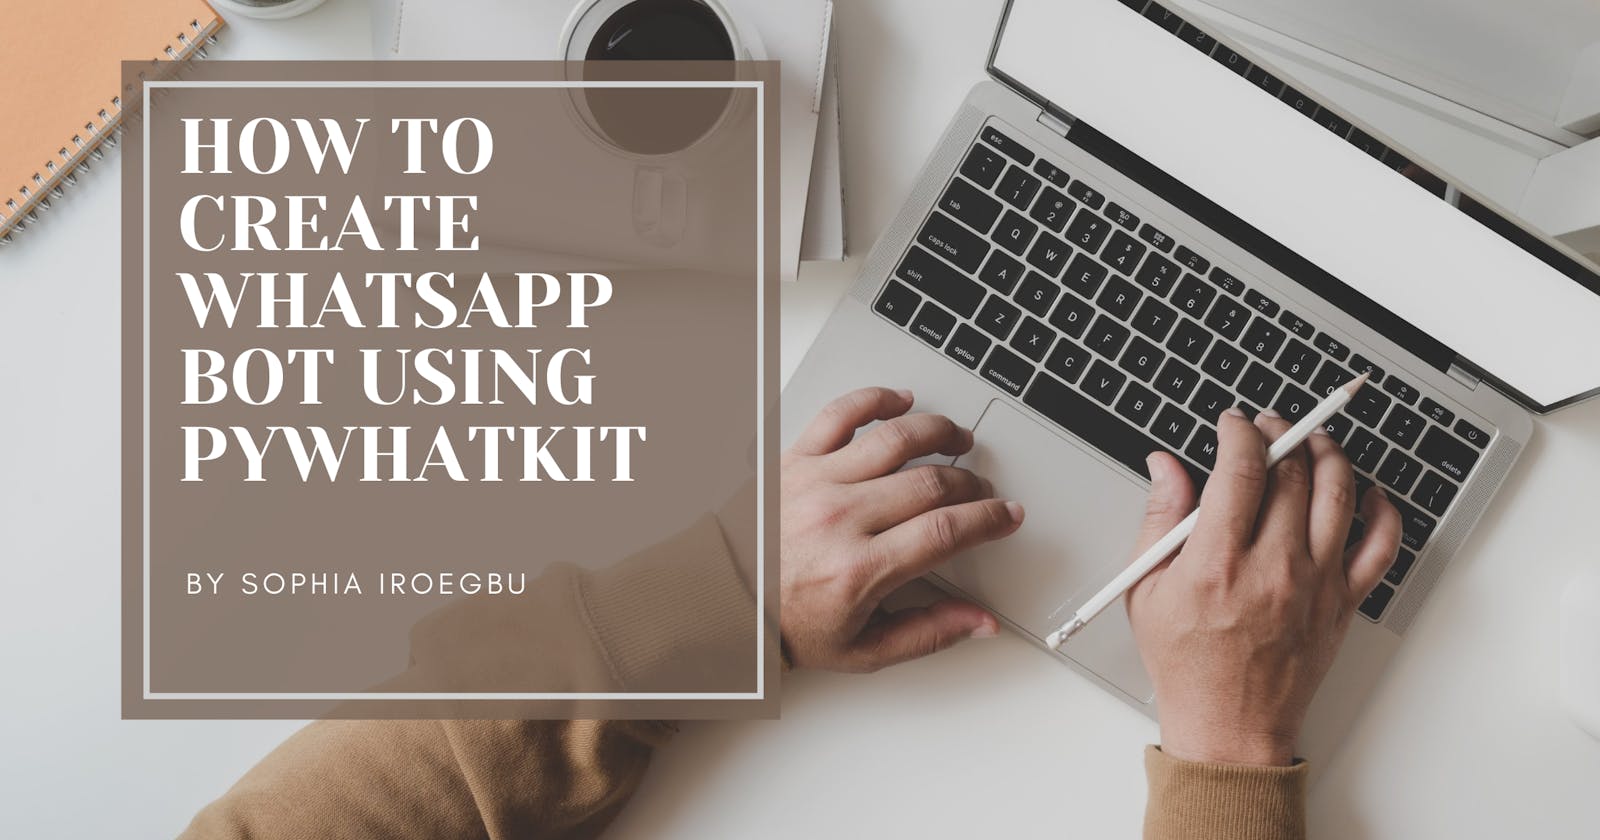 How To Create Whatsapp Bot Using Pywhatkit